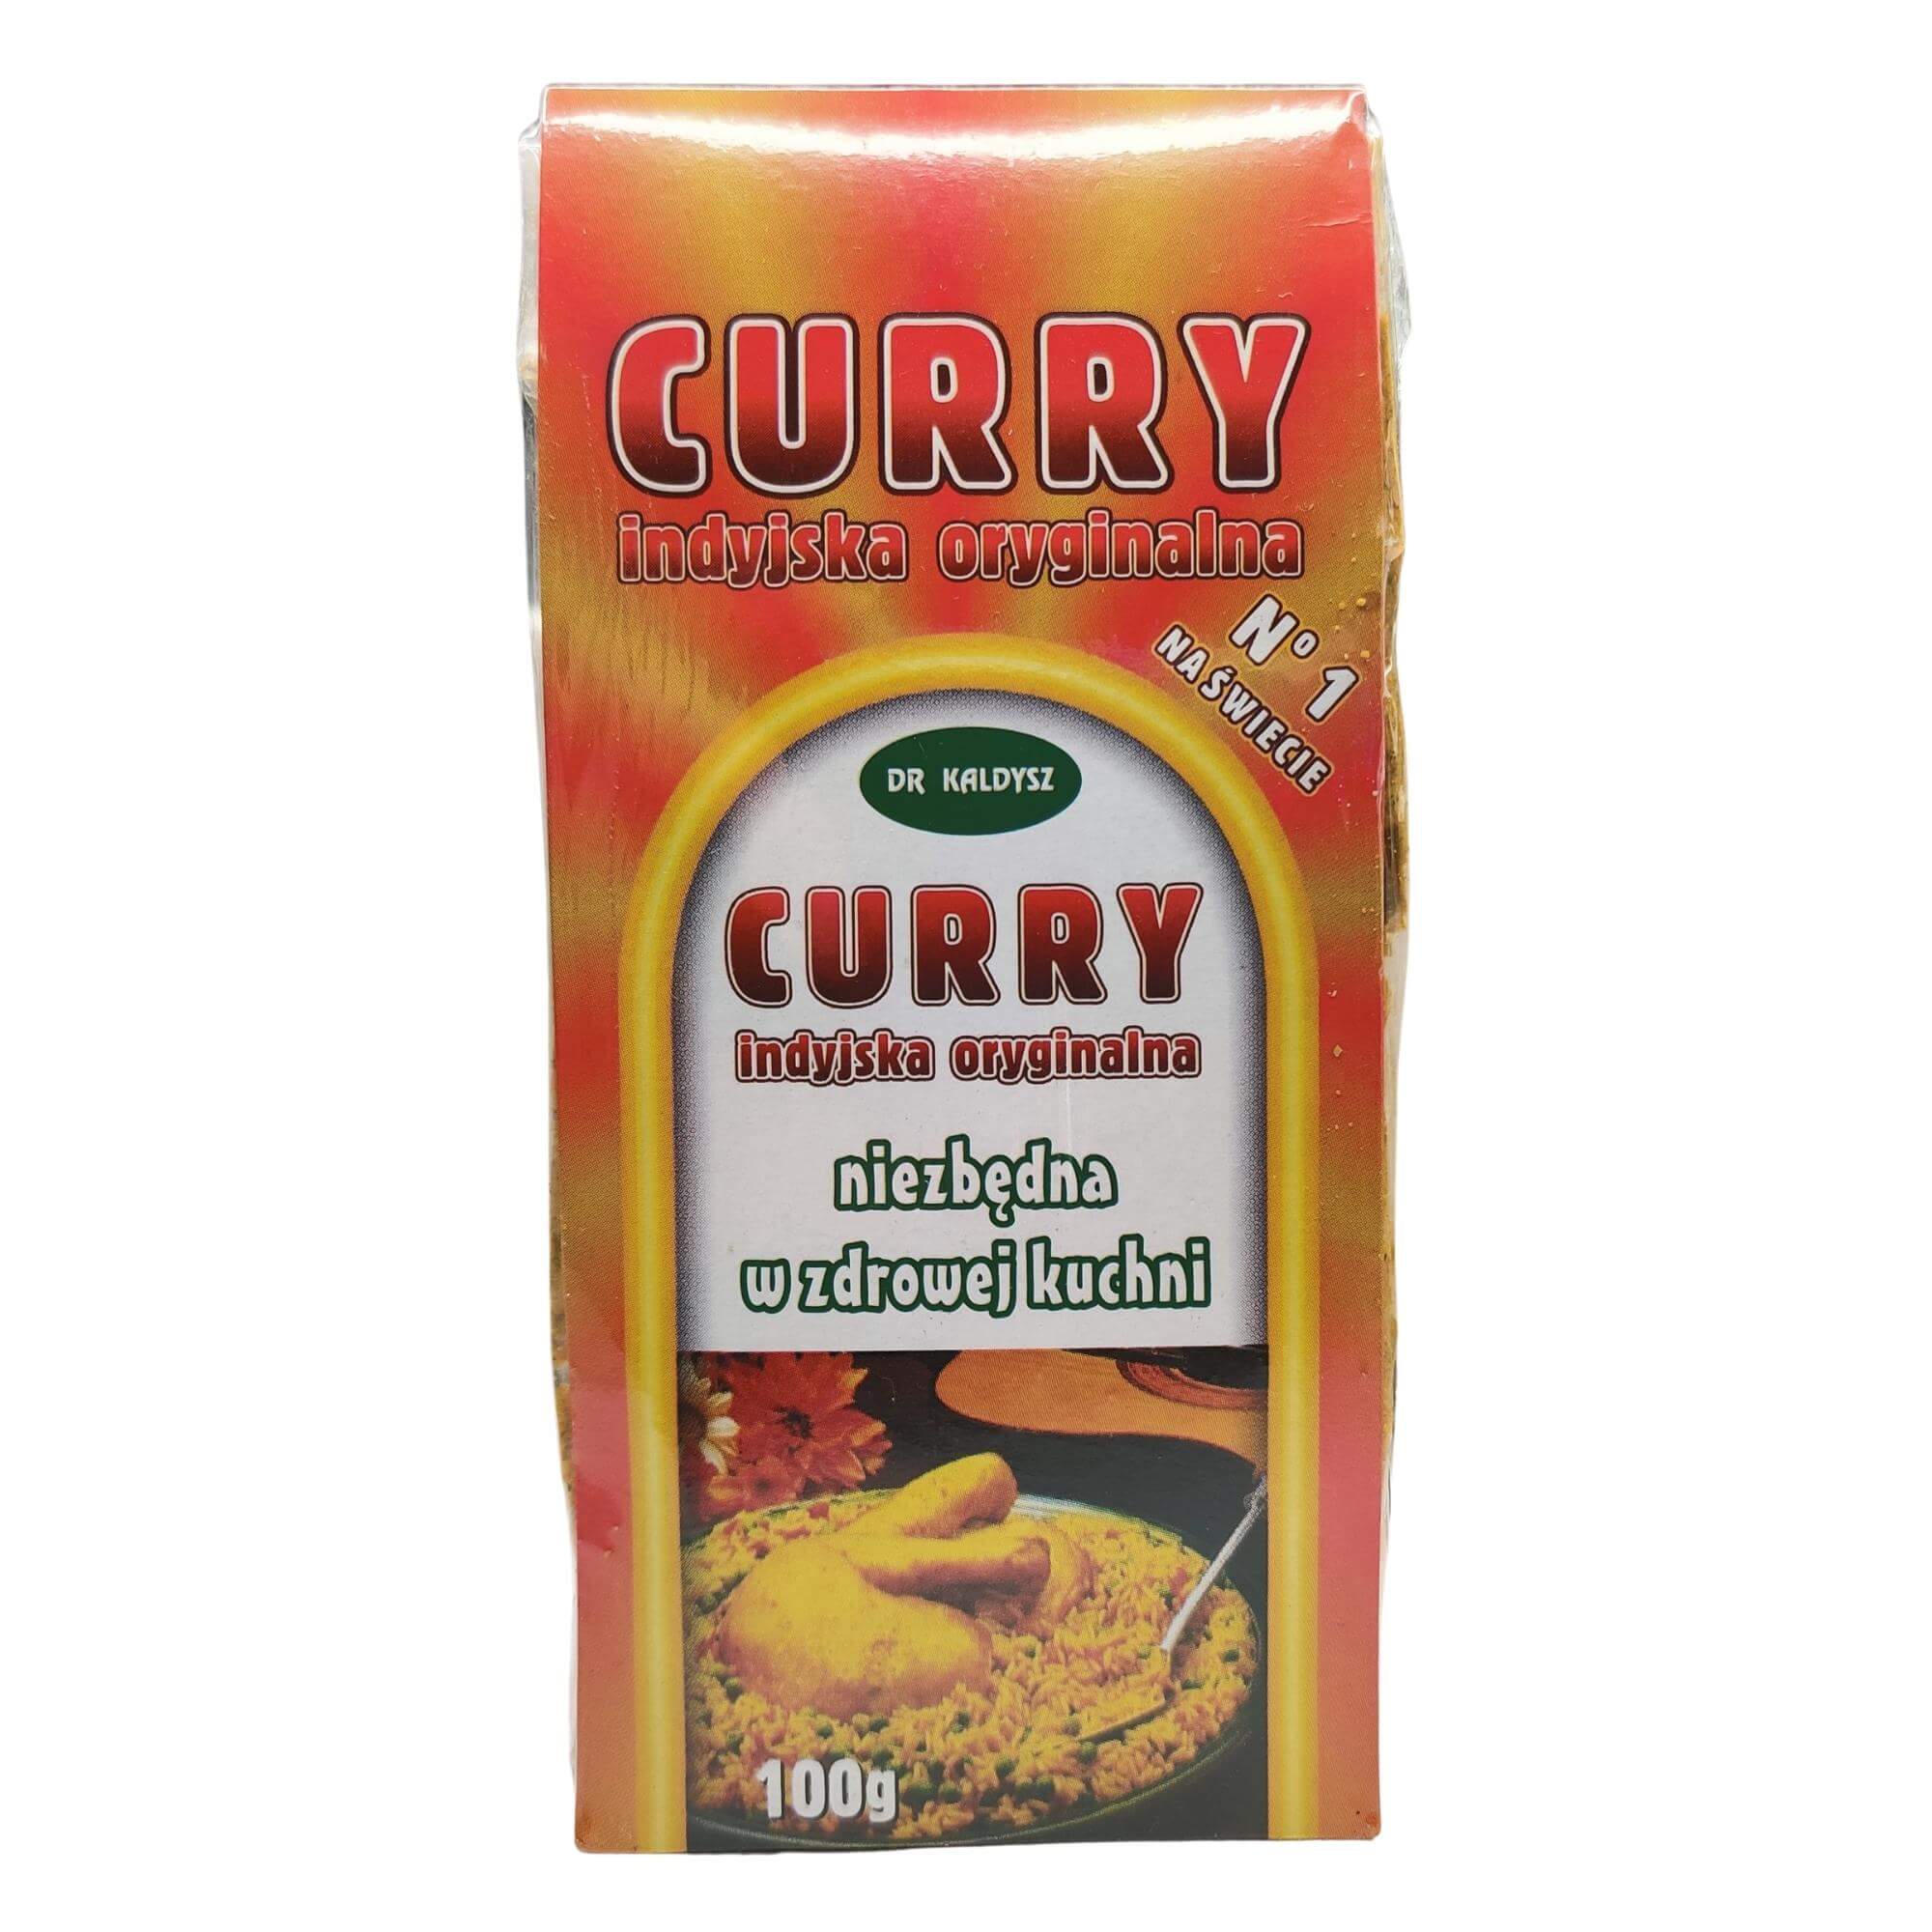 Curry indyjska 100 g - Dr Kaldysz